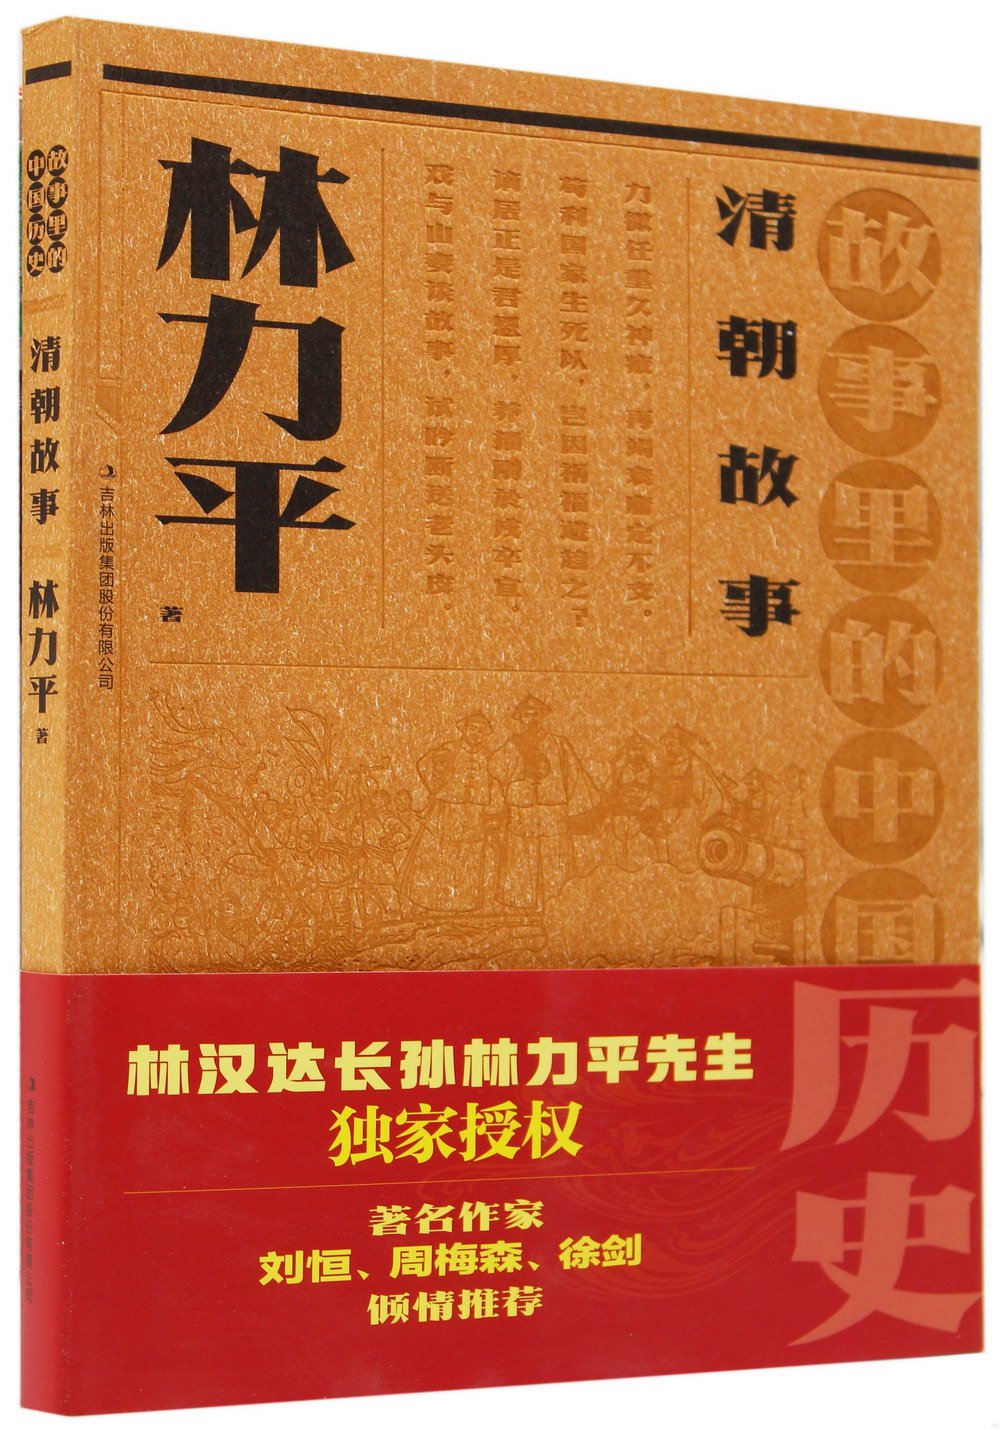 故事里的中國歷史--清朝故事